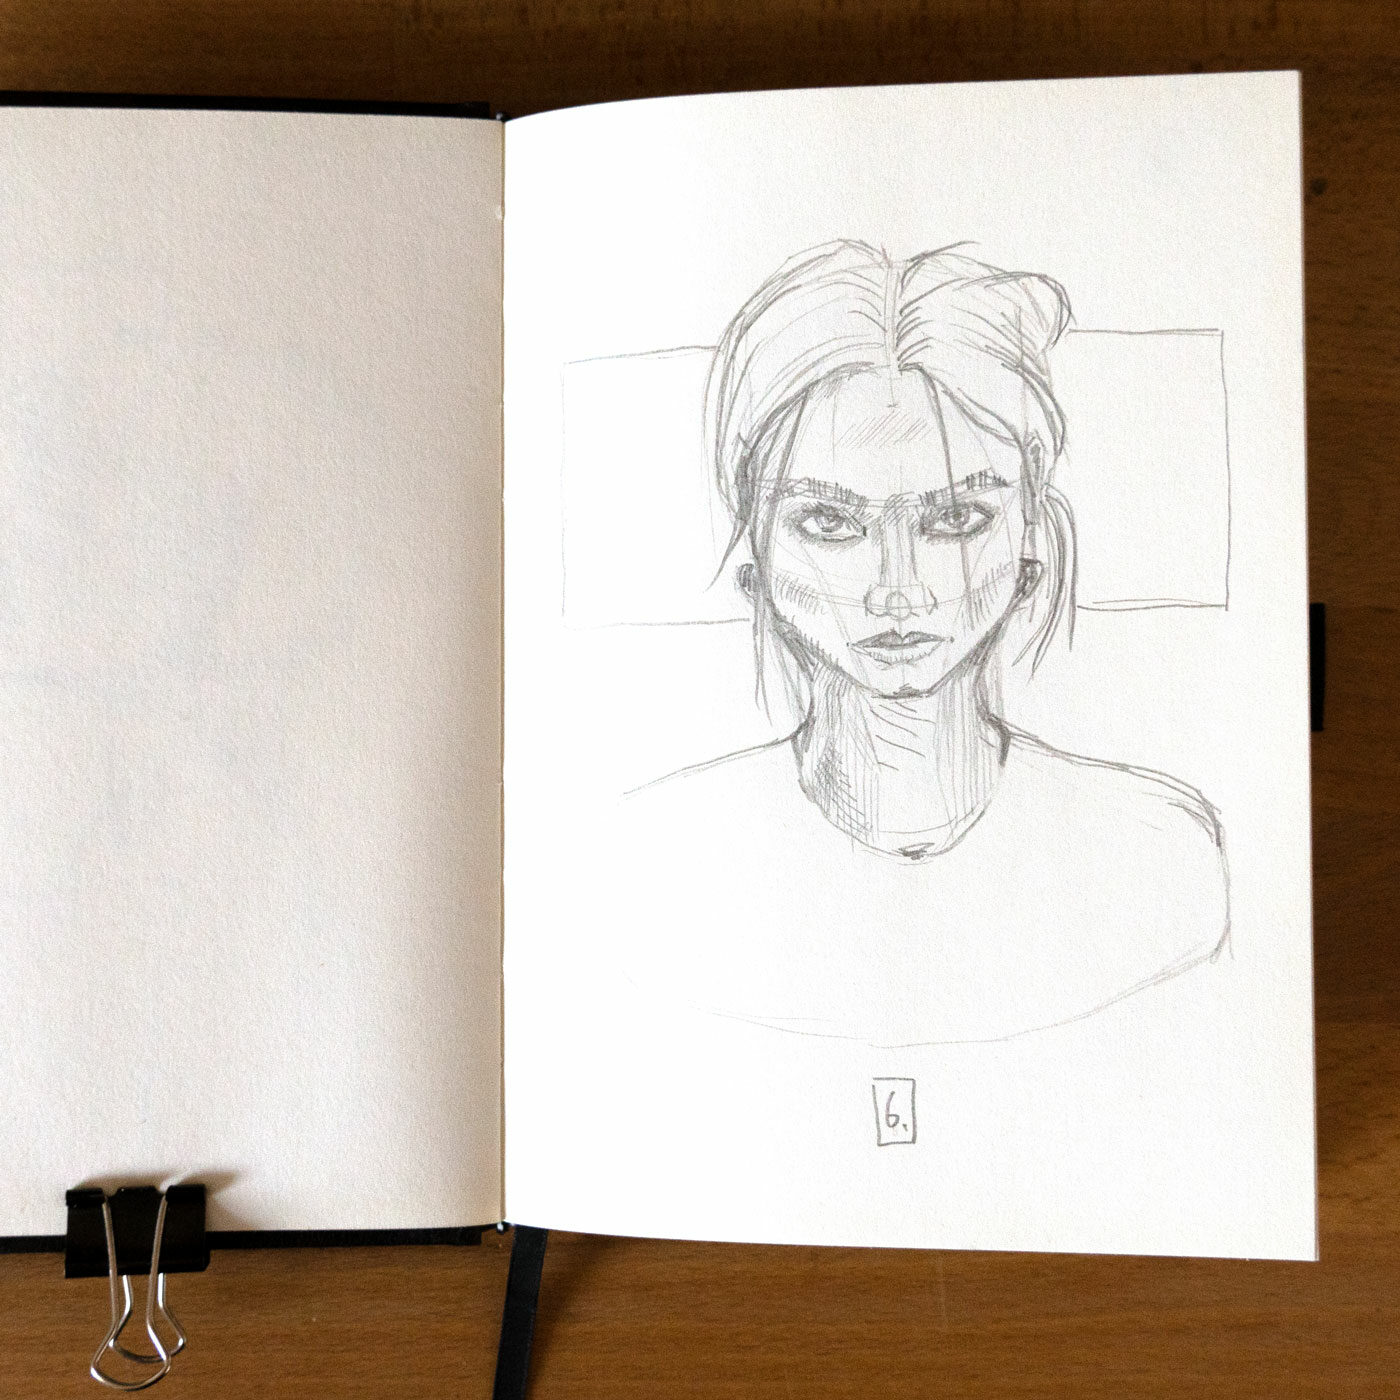 Sechstes Portrait: nach oben blickende Frau mit wüsten Haaren und dunkel geschminkten Augen.